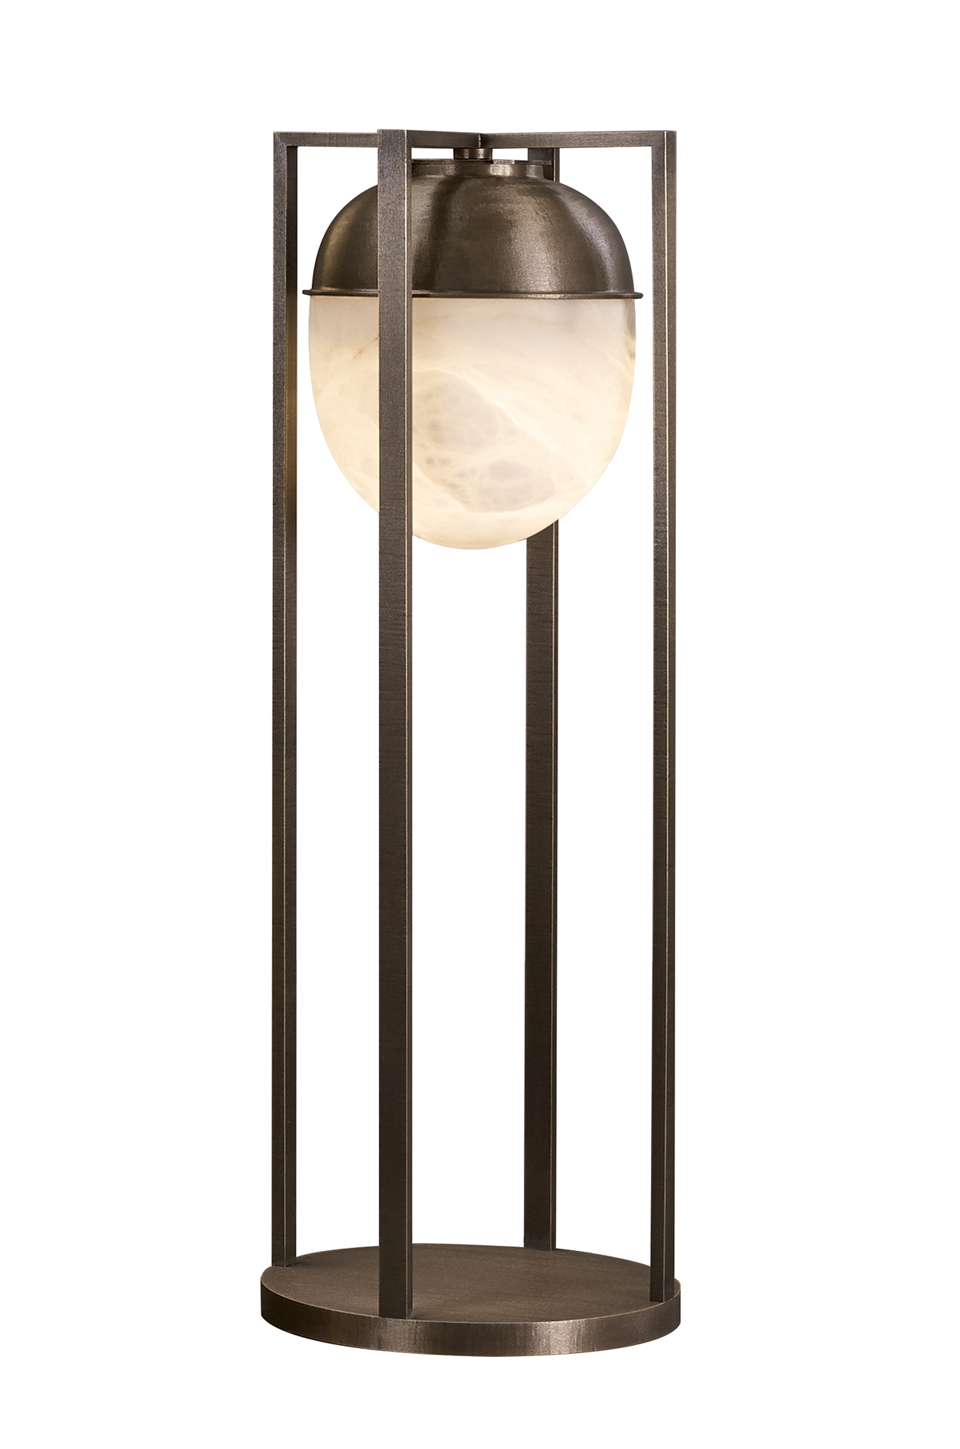 Jorinda — напольная светодиодная лампа с бронзовым каркасом и алебастровым абажуром из каталога Promemoria | Promemoria